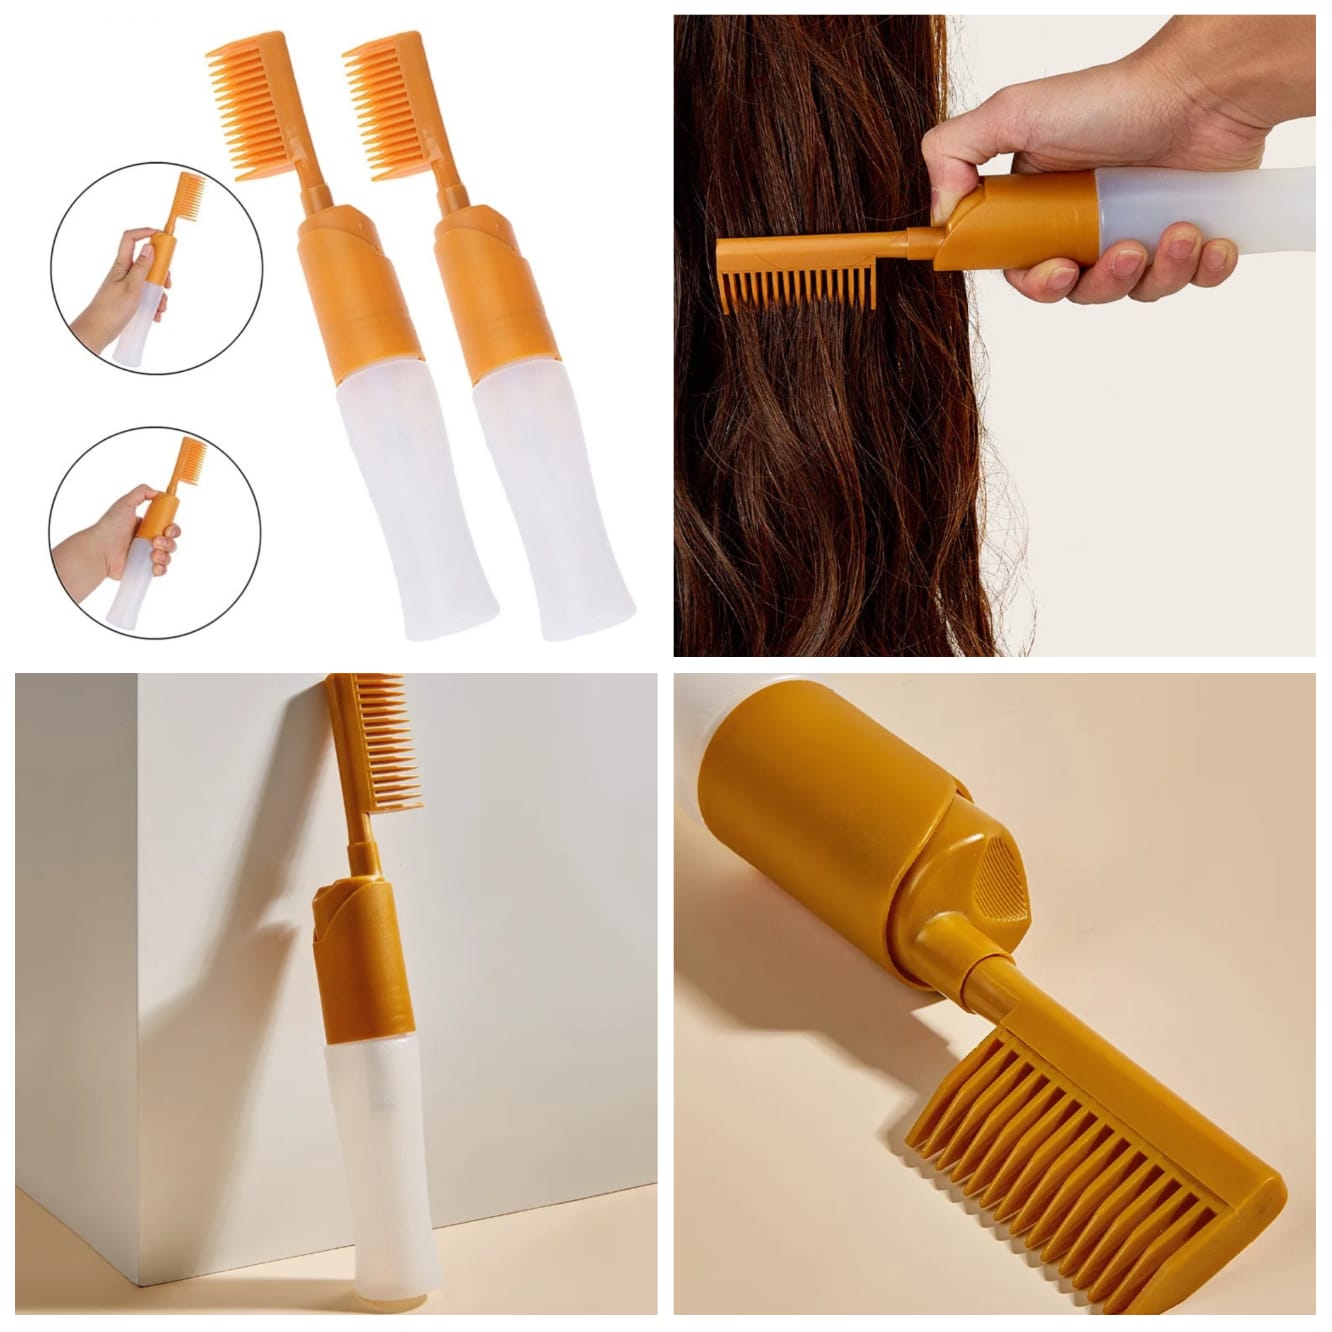 Professional Hair Applicator Bottle use for Oil & Hair Dye Application